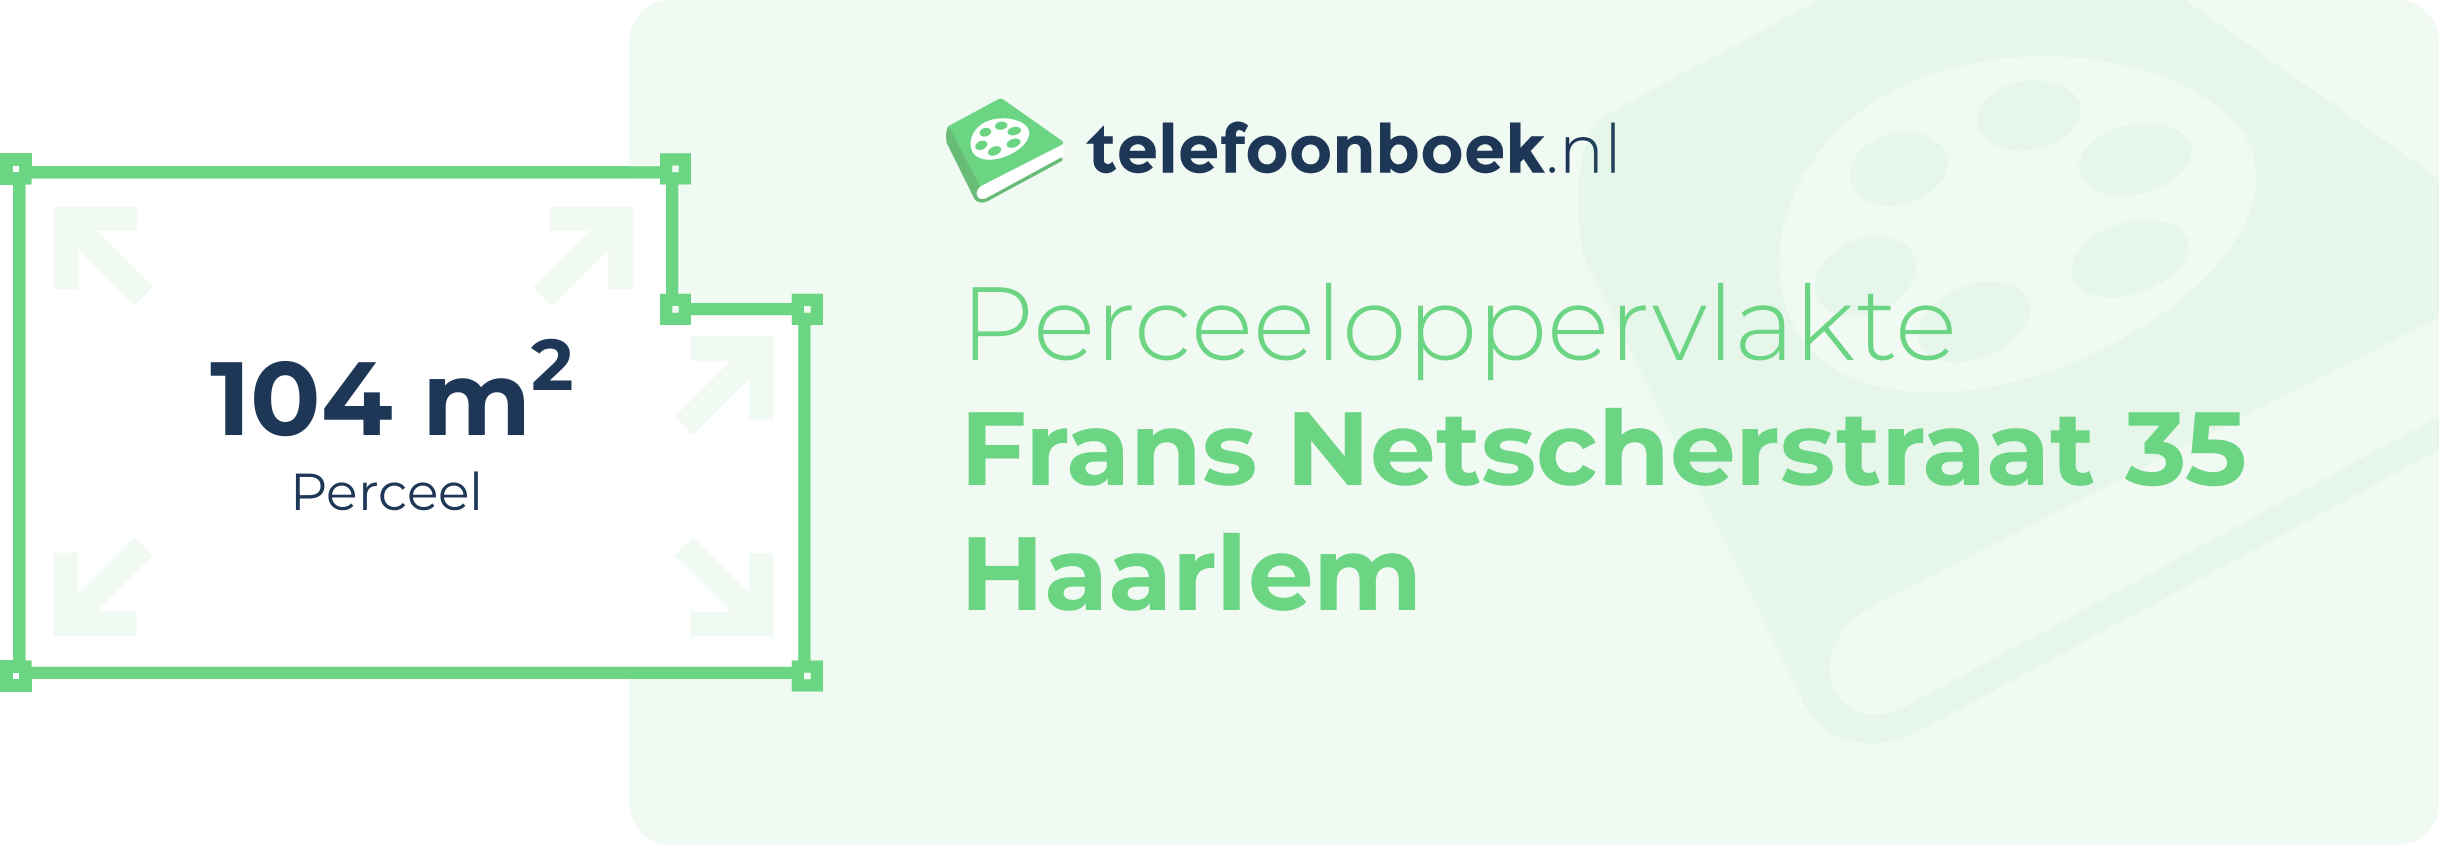 Perceeloppervlakte Frans Netscherstraat 35 Haarlem